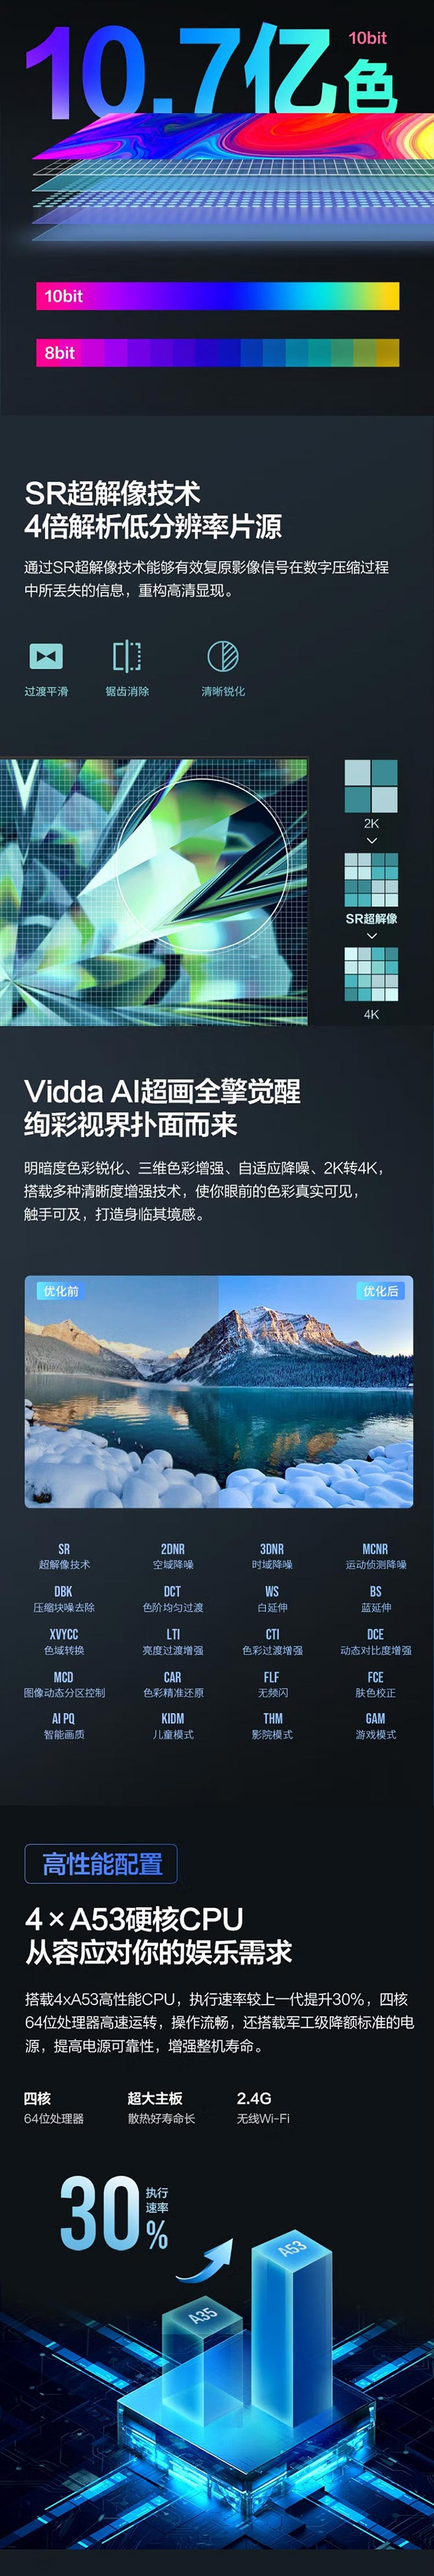 海信 Vidda 55英寸 4K超高清 超薄电视 1.5G+8G 全面屏电视智慧屏 55V1F-R